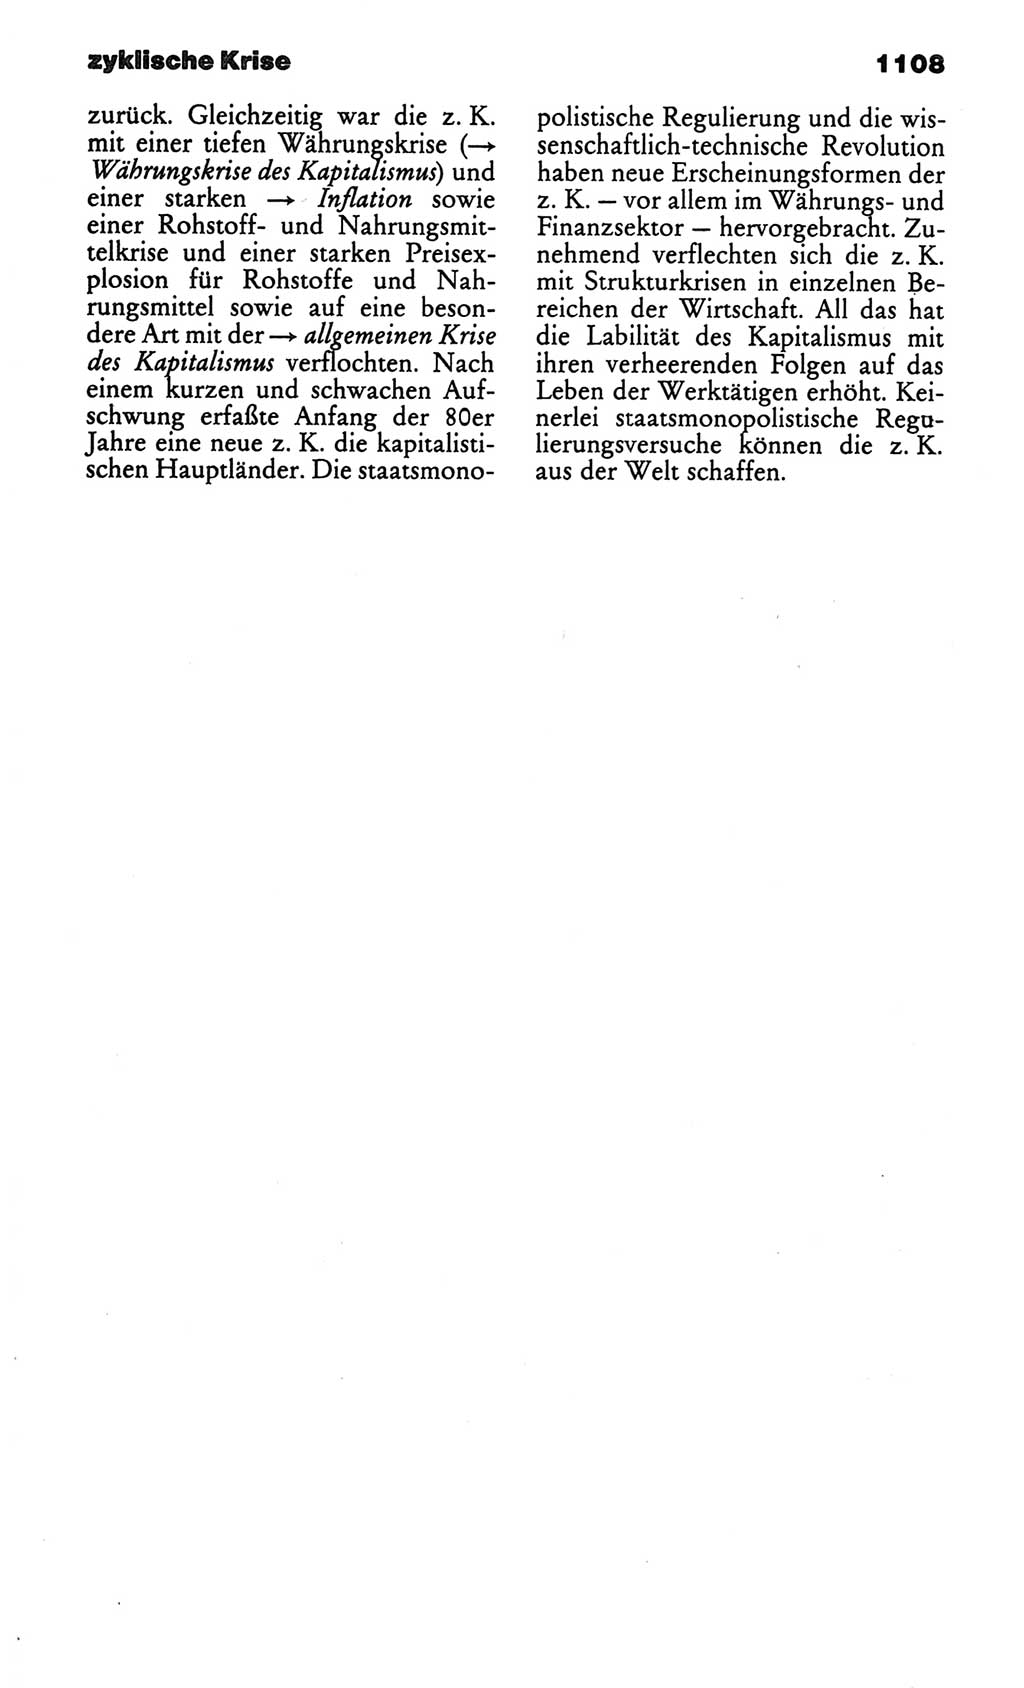 Kleines politisches Wörterbuch [Deutsche Demokratische Republik (DDR)] 1986, Seite 1108 (Kl. pol. Wb. DDR 1986, S. 1108)